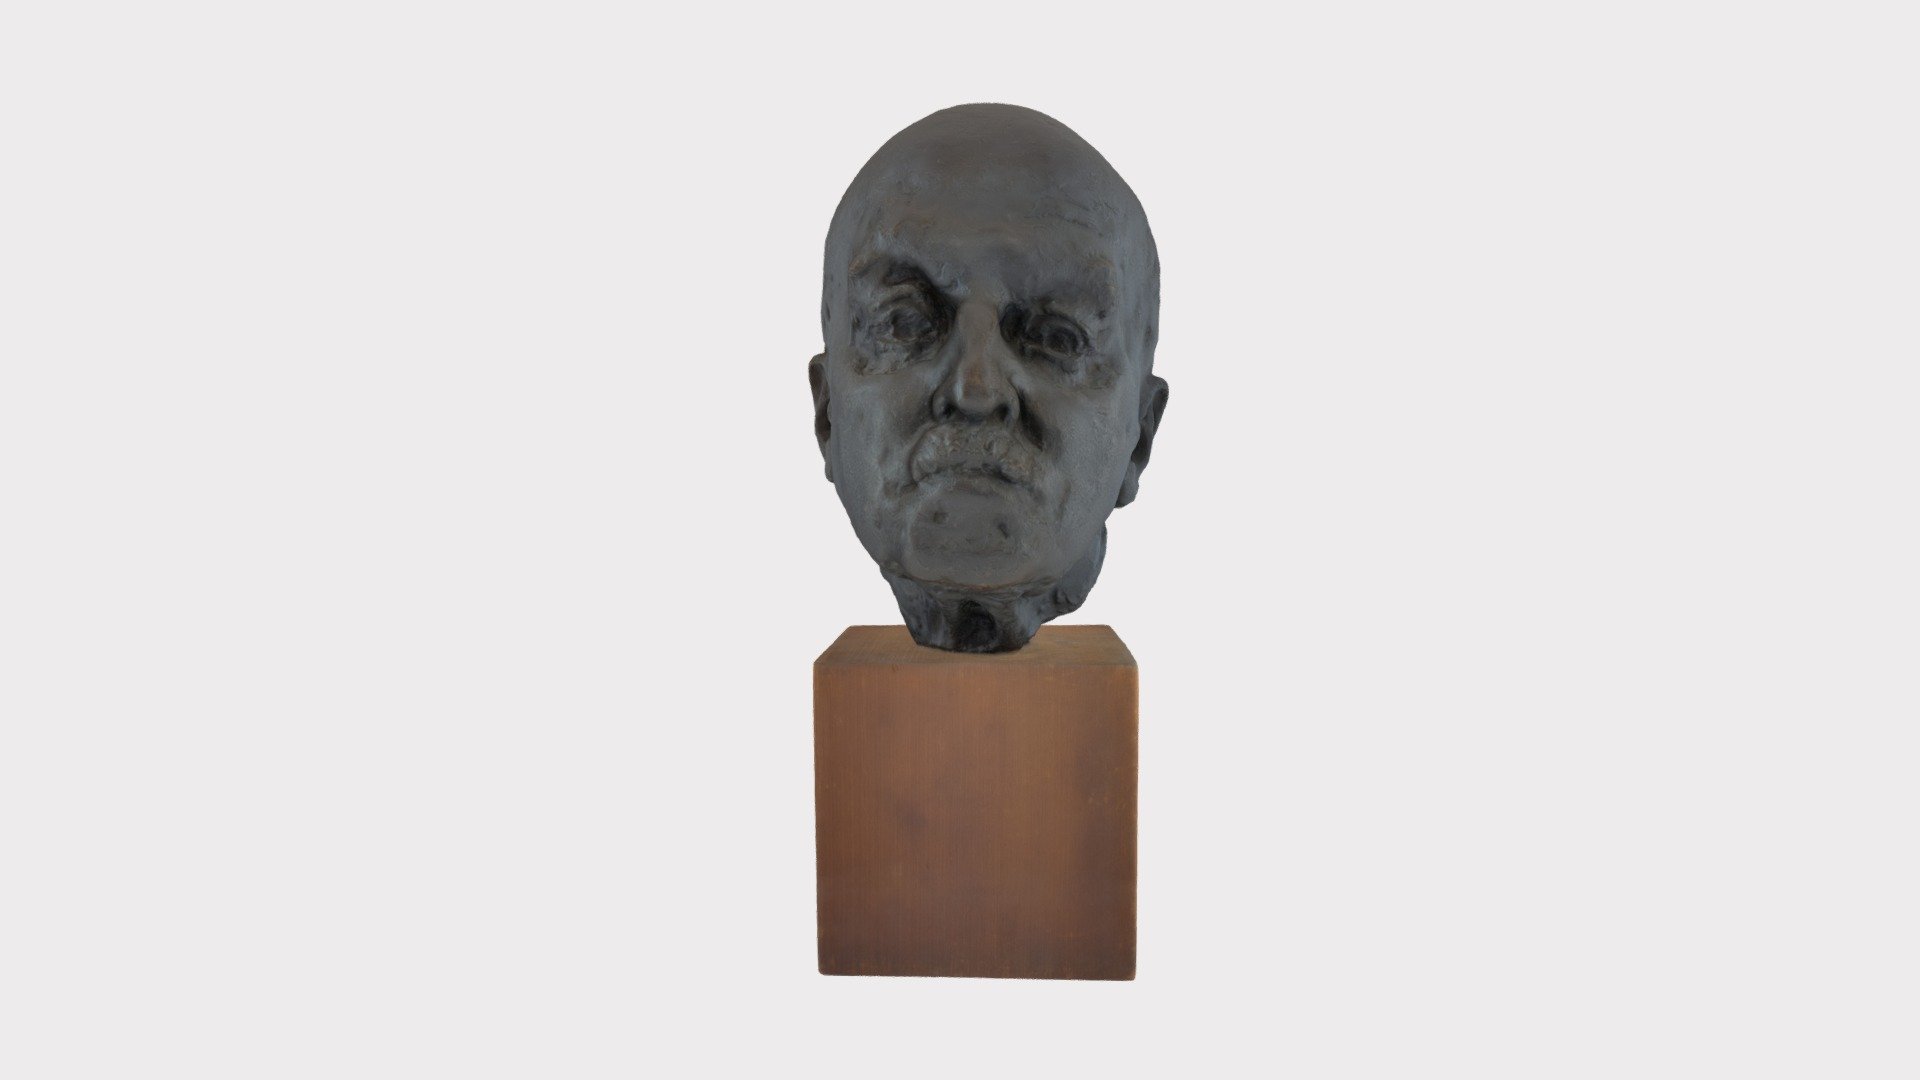 Bust of Harrington Emerson by Noguchi